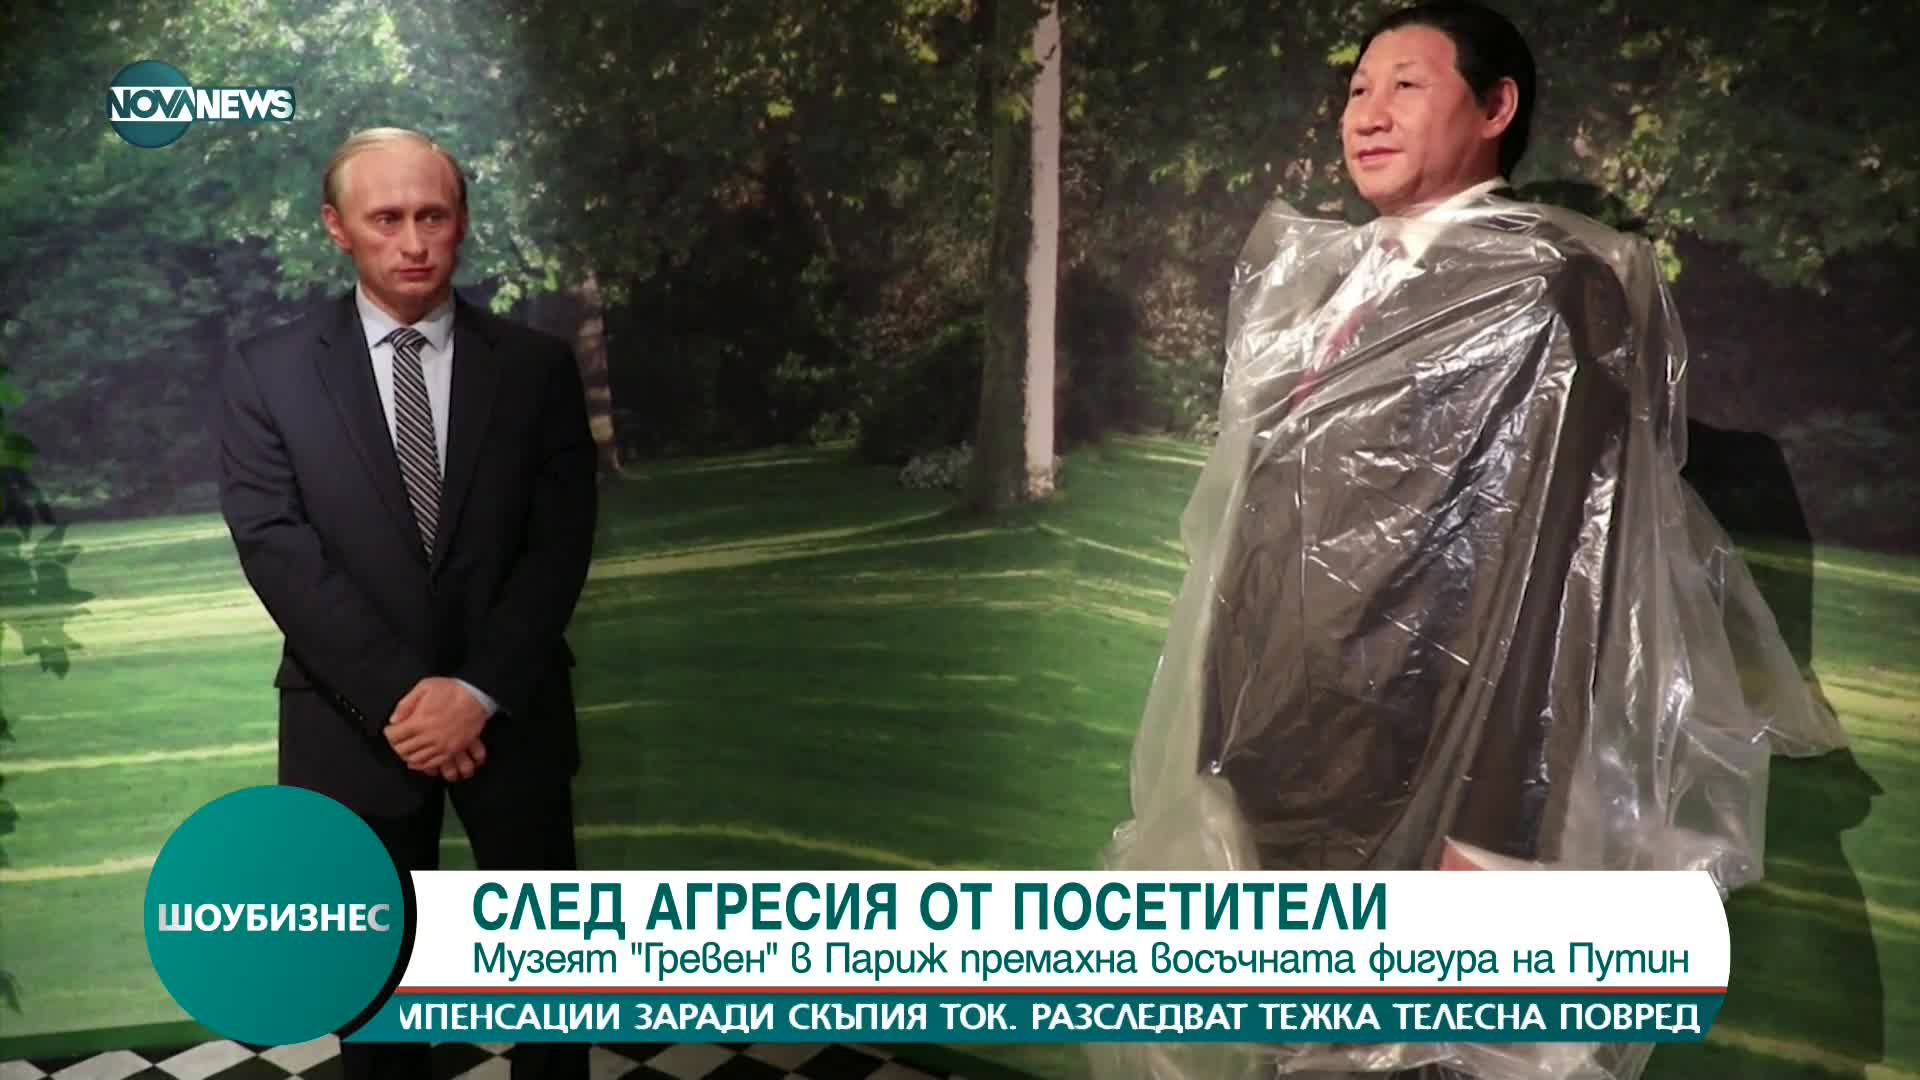 Премахнаха восъчната фигура на Путин от музея "Гревен"